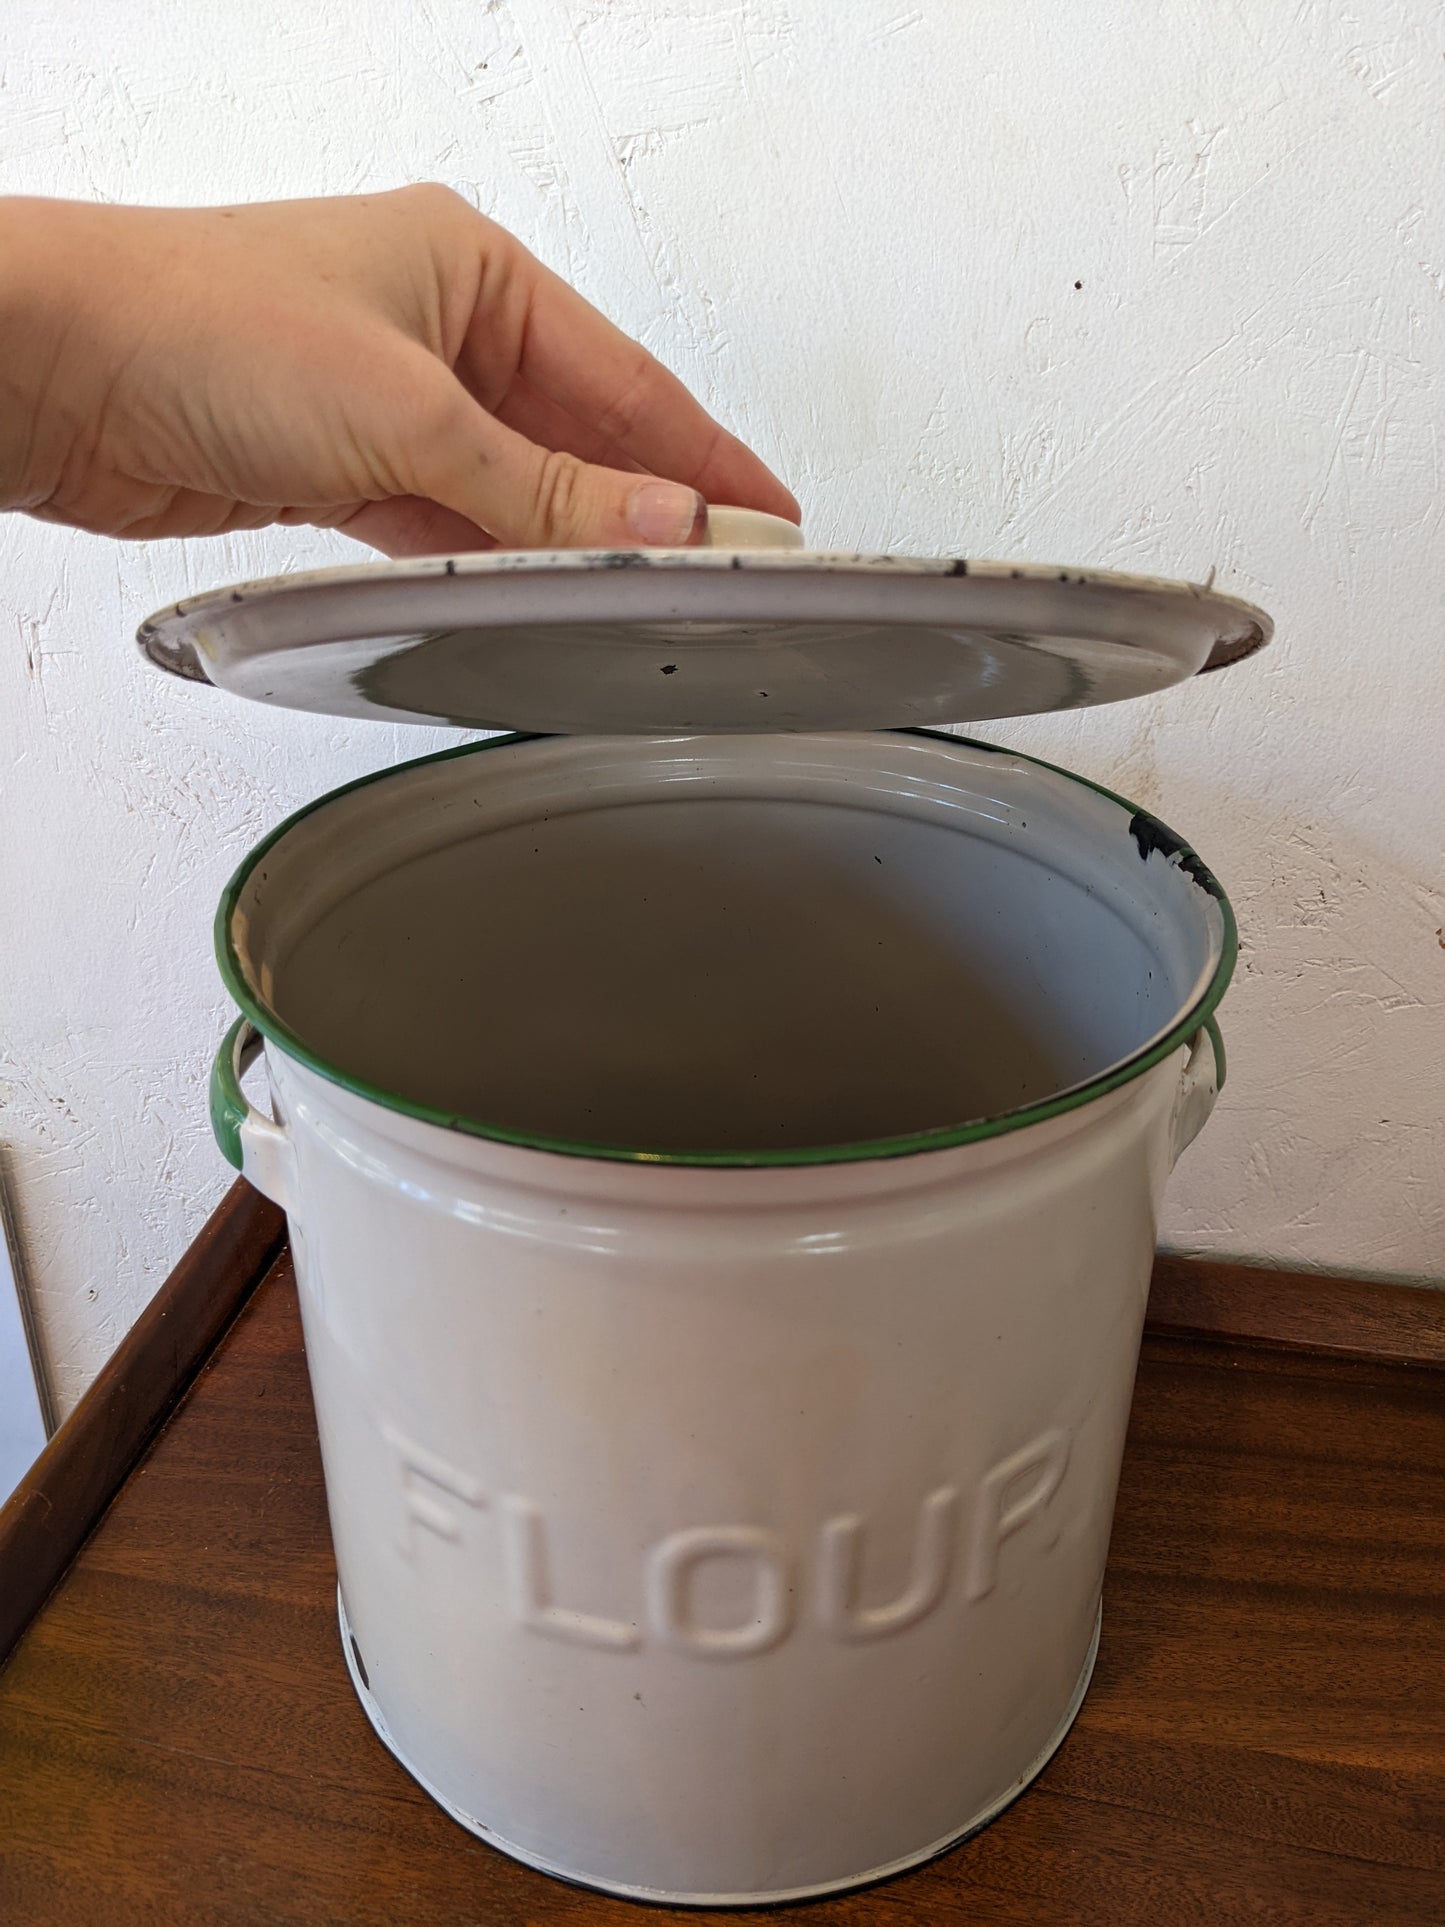 Vintage Enamel Flour Tin